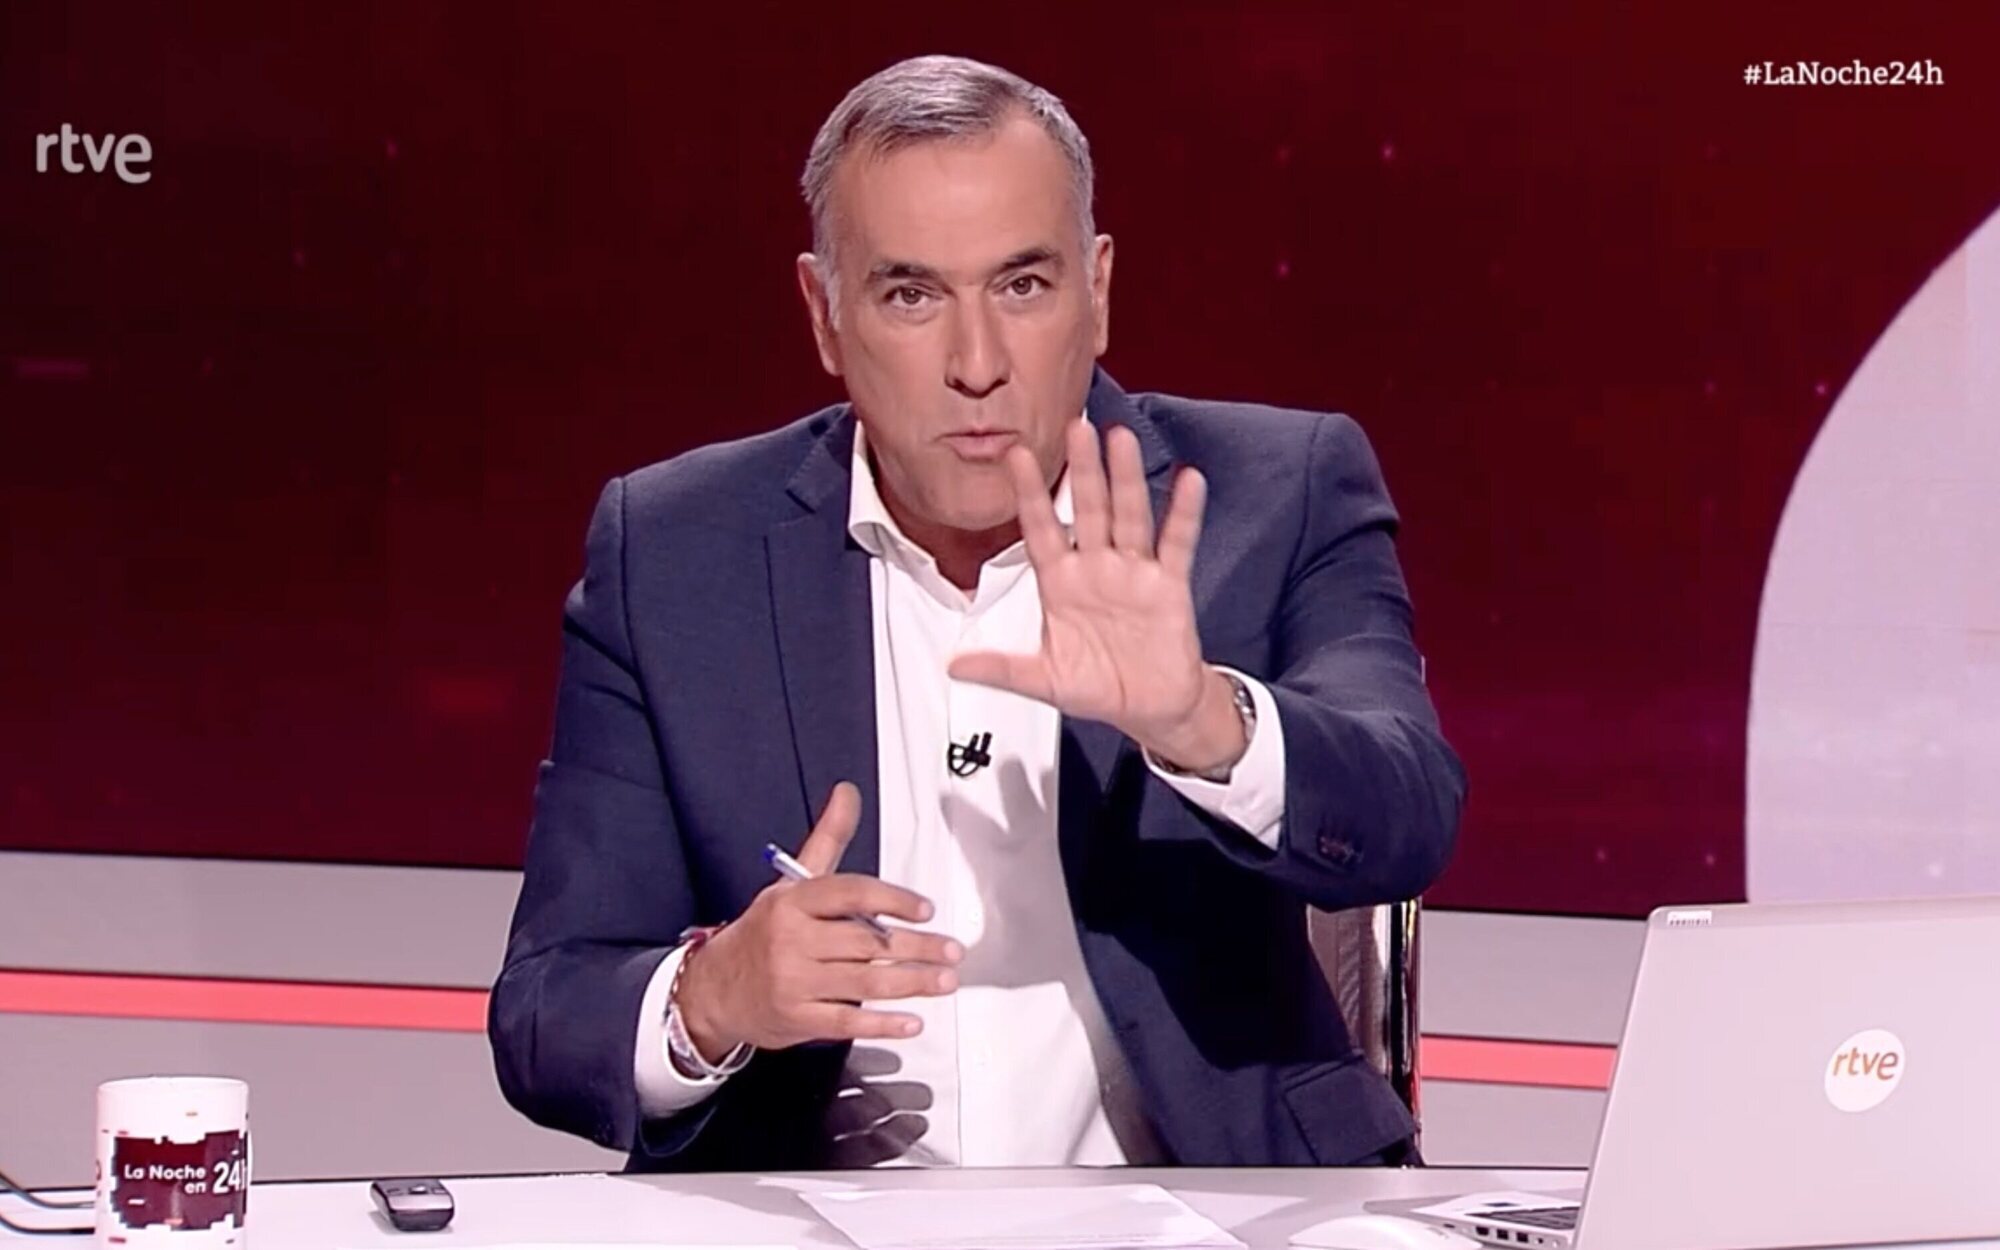 Xabier Fortes, ante los ataques del PP a TVE: "No somos un partido político, somos una televisión pública"